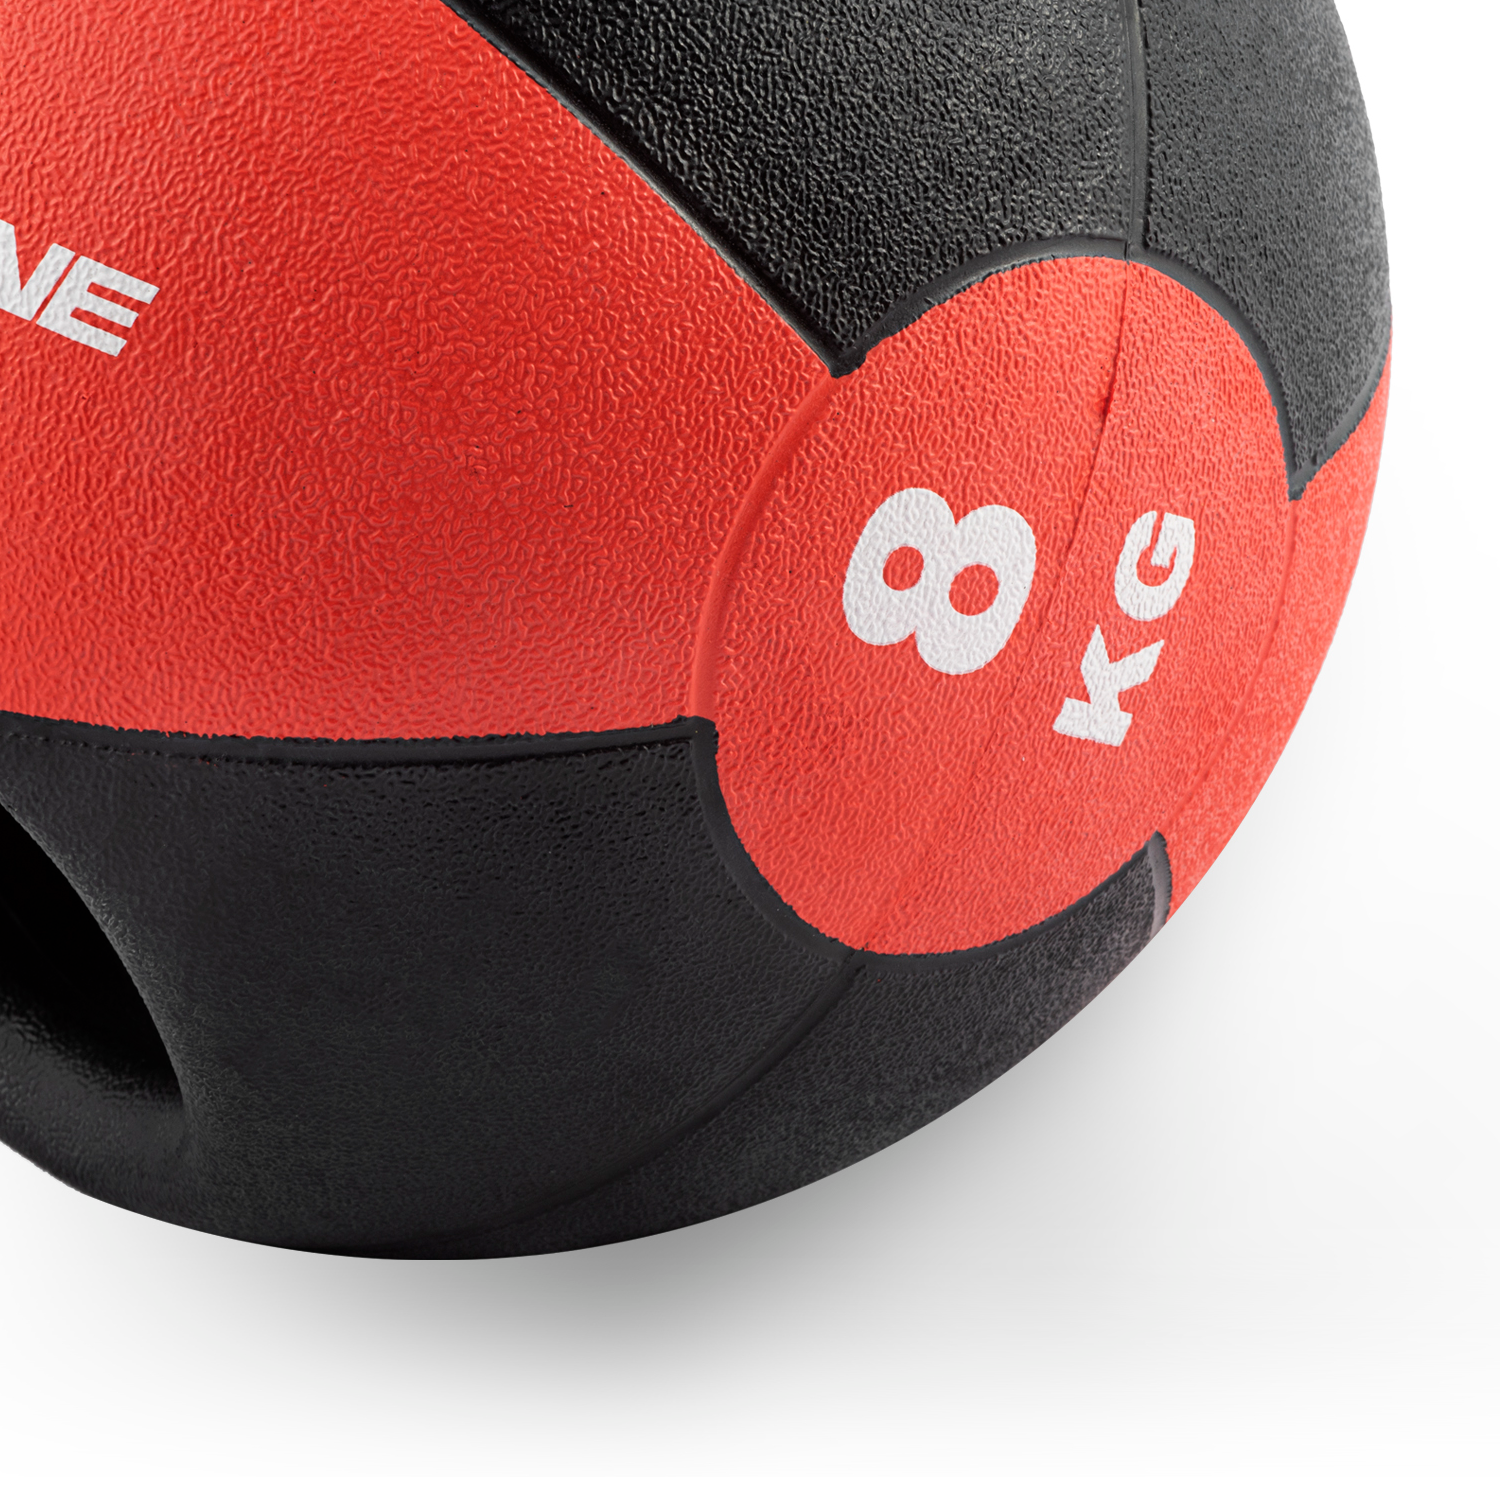 Body Sport Balón medicinal de 8 libras, agarre doble, negro